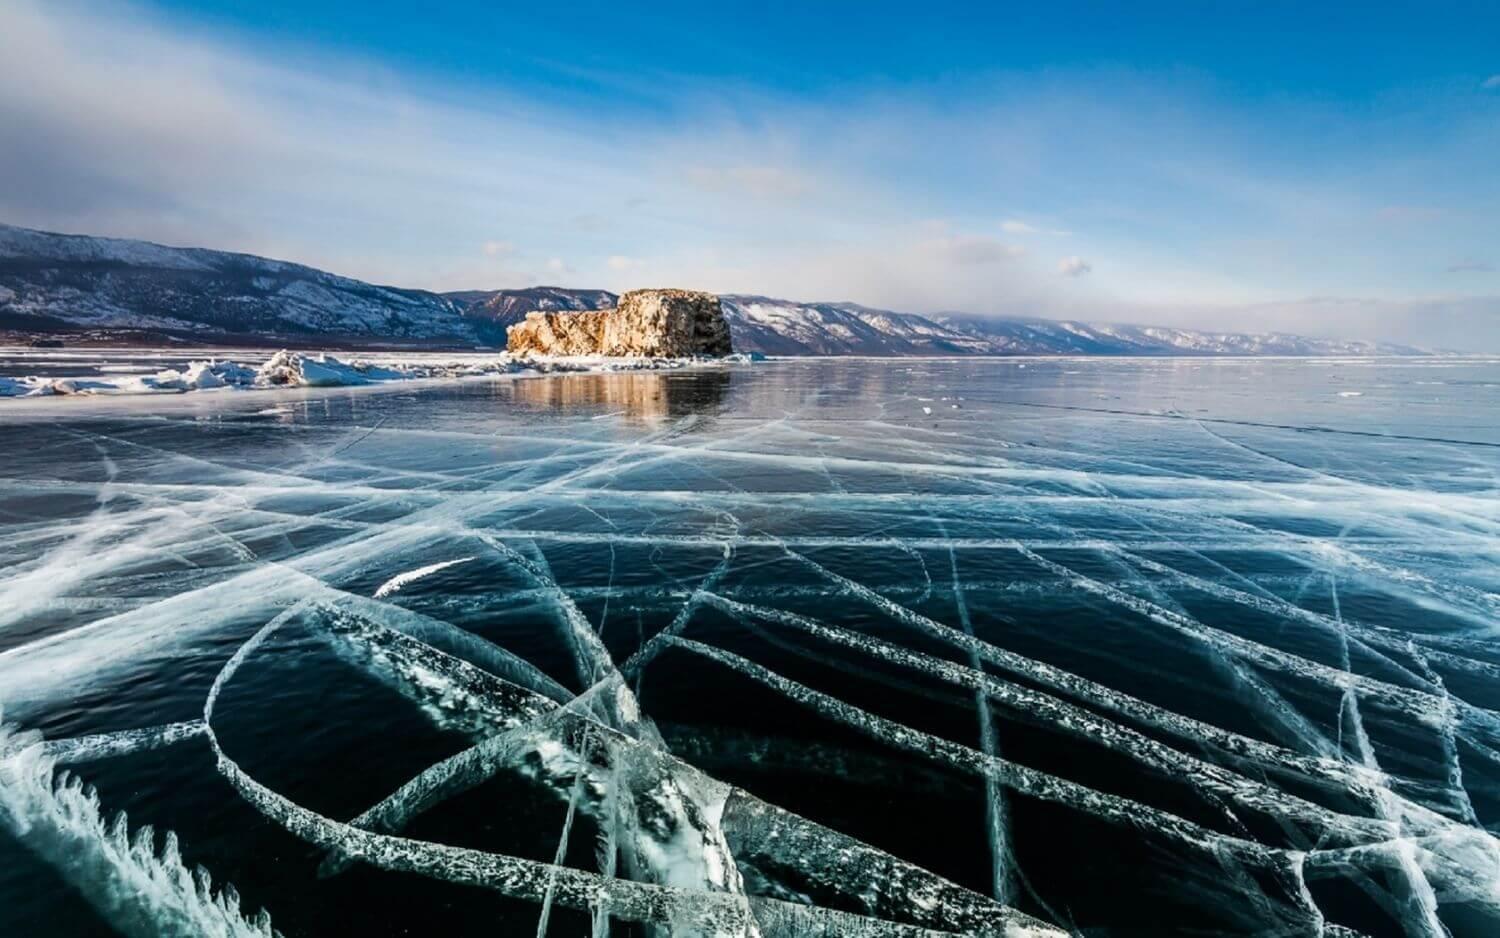 Учиме руски jазик - Прилеп - Озеро Байкал зимой | Facebook